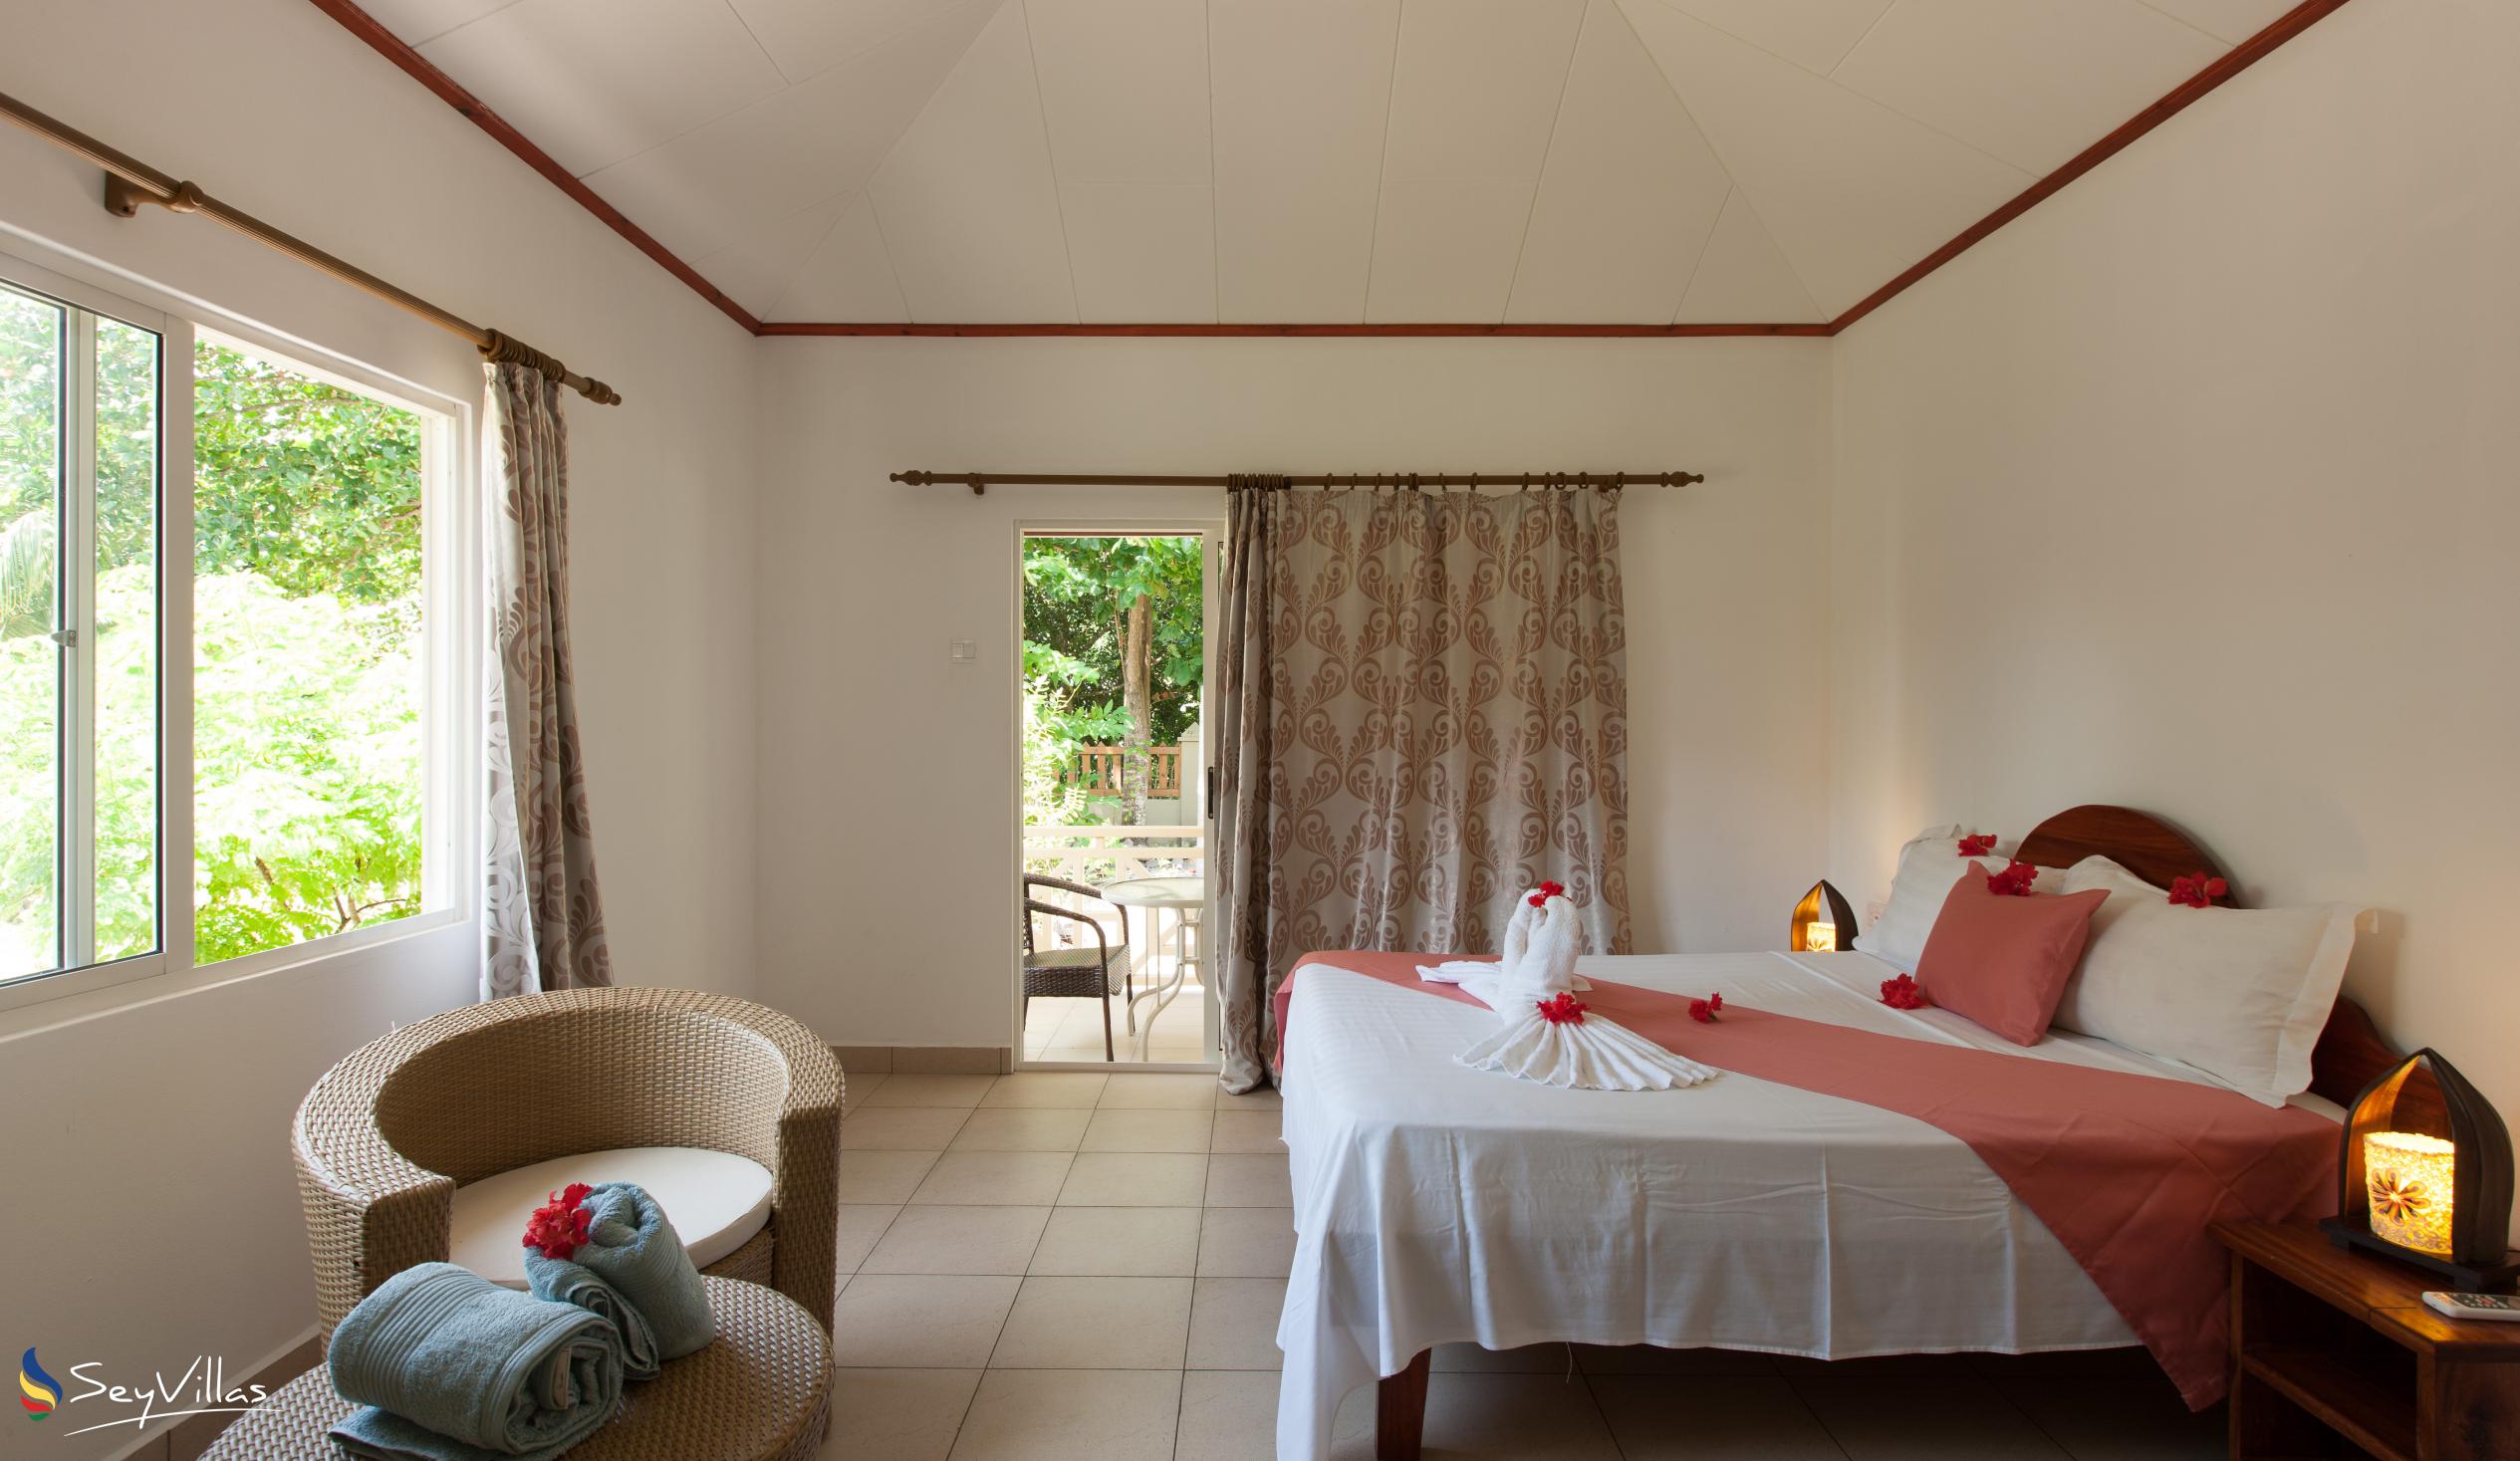 Foto 4: Hostellerie La Digue - Bungalow con 3 camere da letto - La Digue (Seychelles)